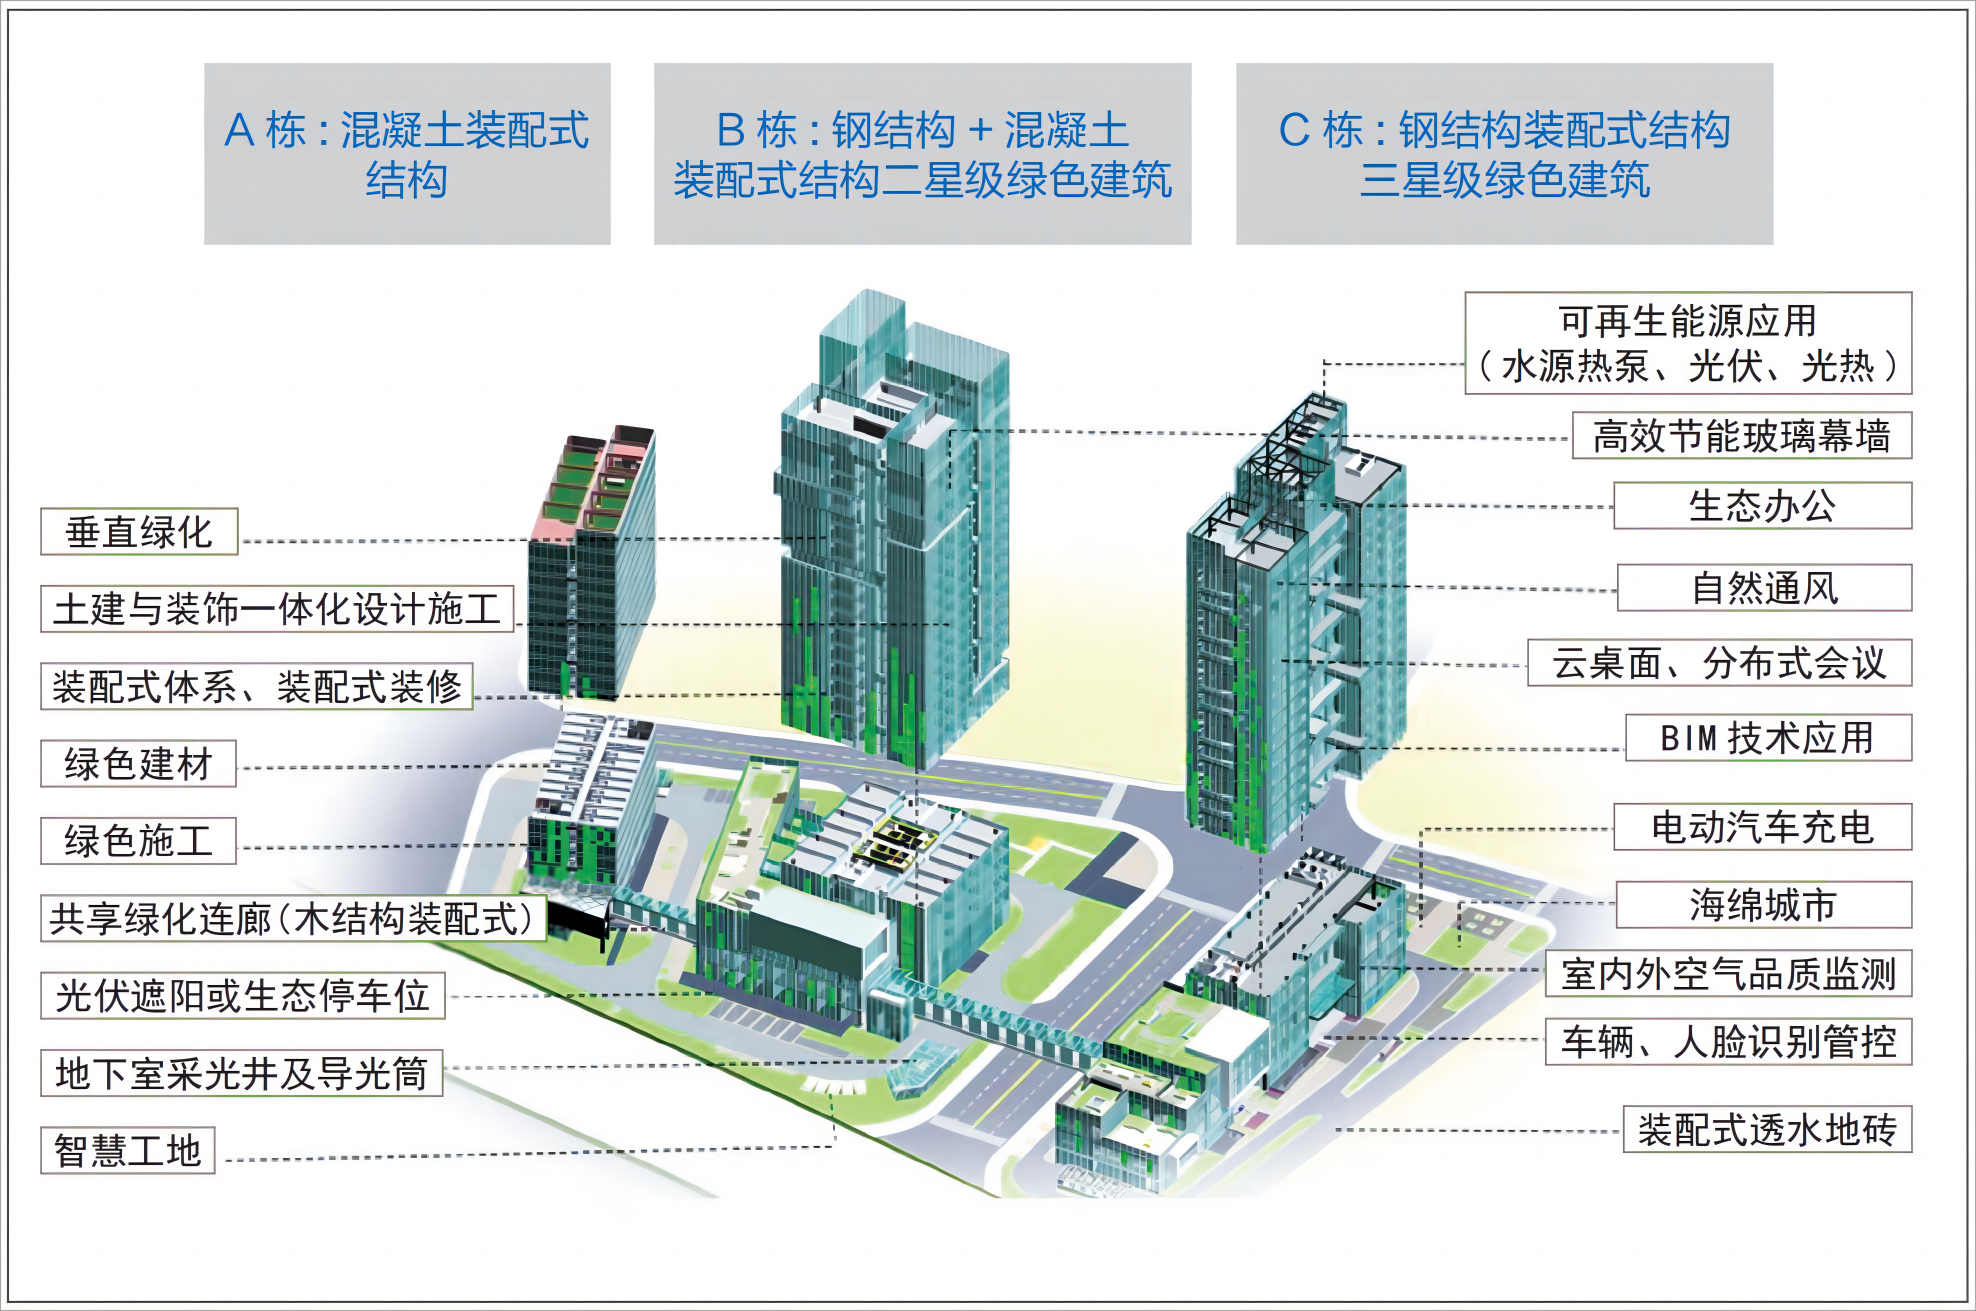 1 项目绿色建筑技术系统图.png